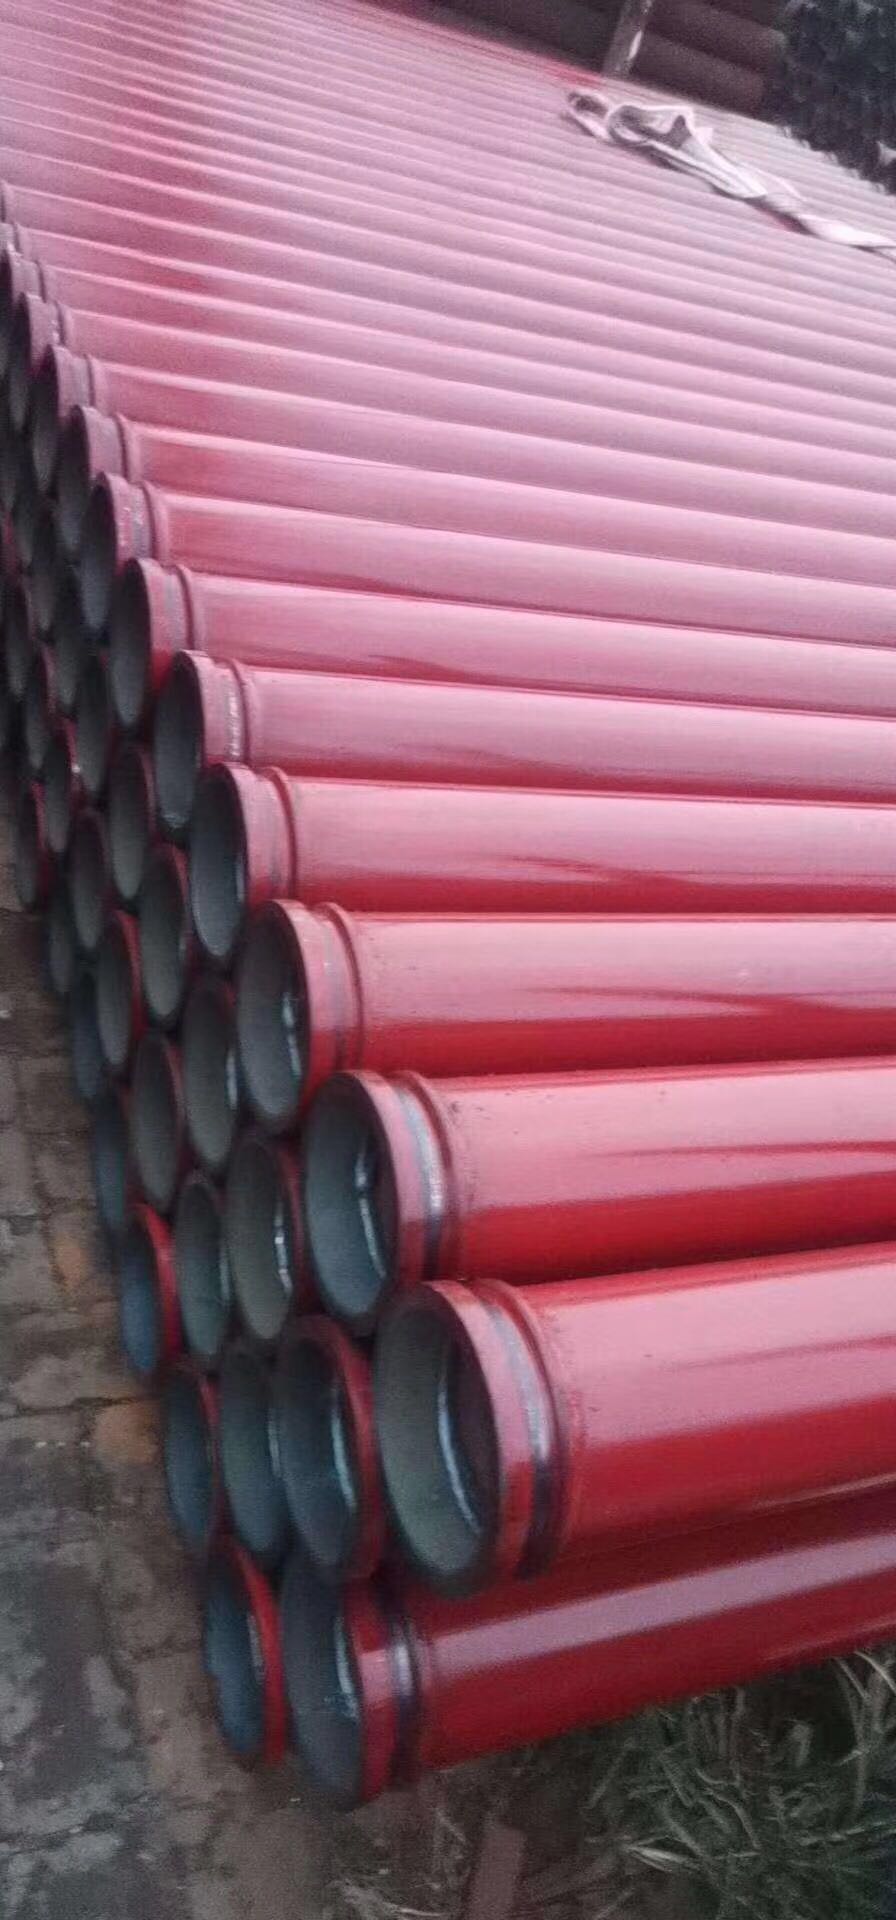 沧州市混凝土泵管厂家混凝土泵管哪家好 混凝土泵管厂家 河北混凝土泵管